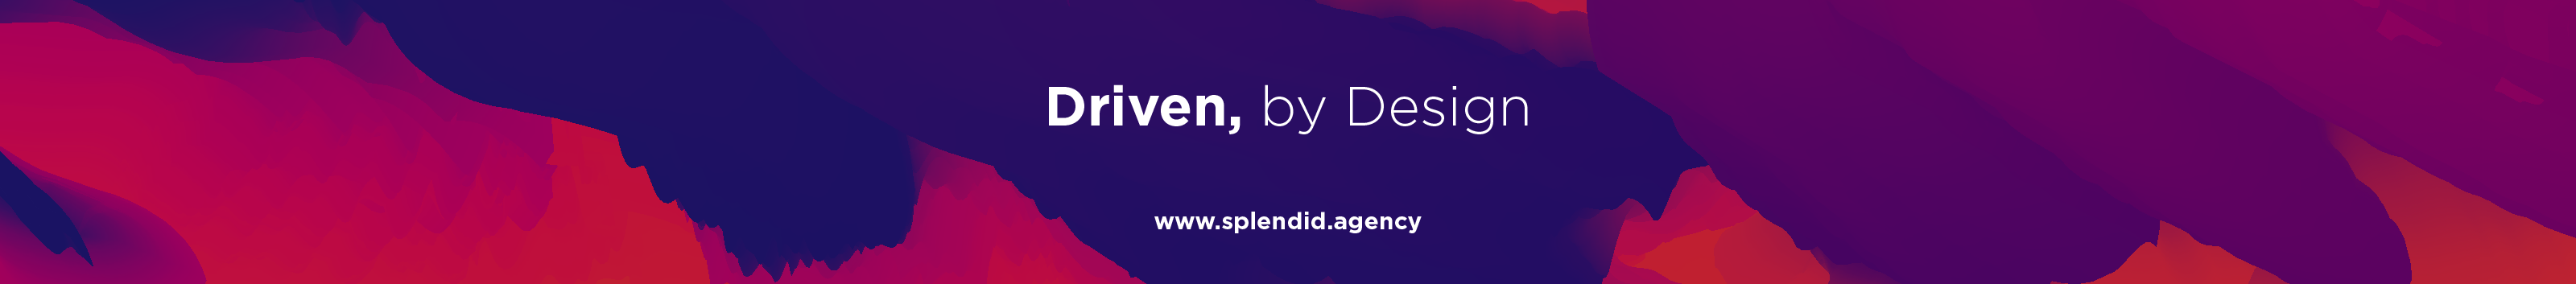 Splendid Agency's profile banner